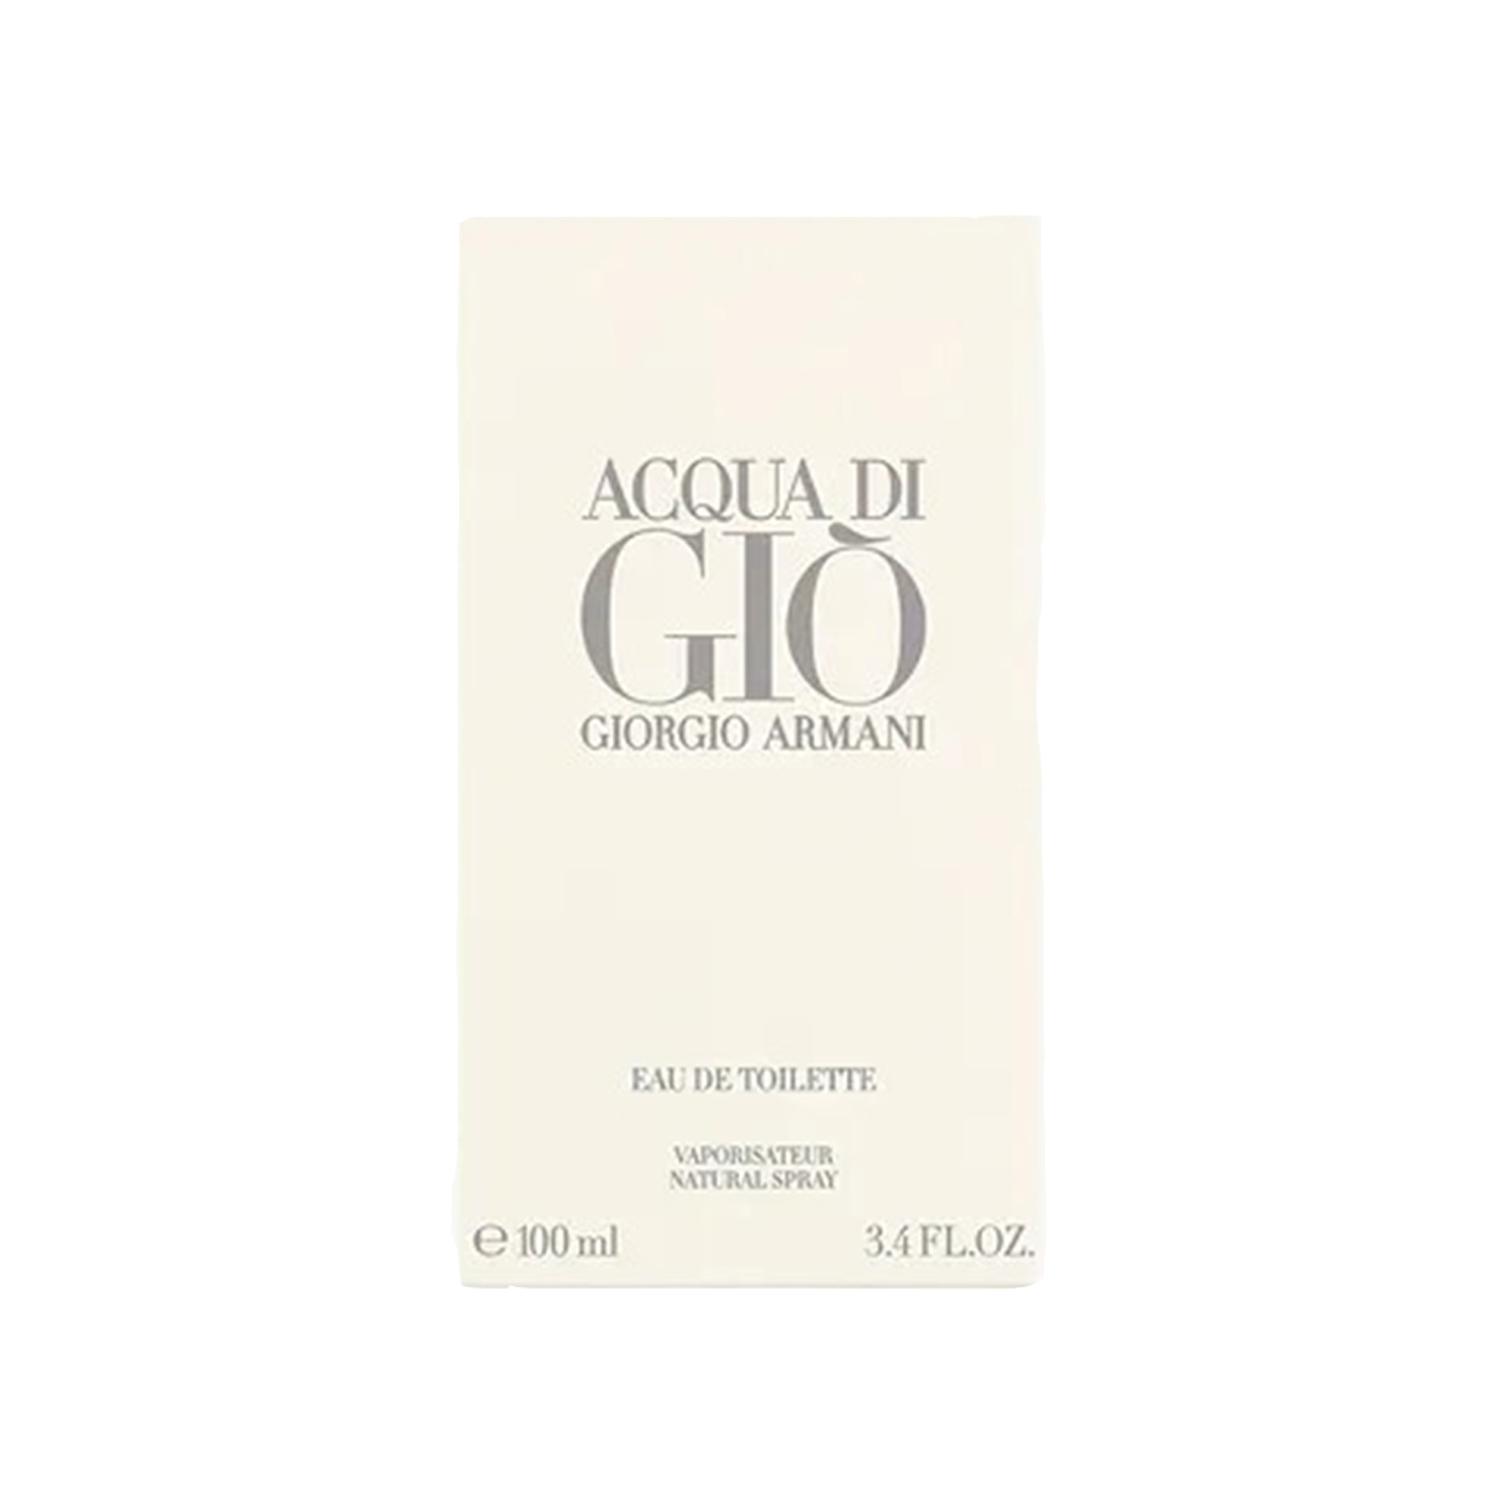 Giorgio Armani Acqua Di Gio Eau De Toilette, Cologne for Men, 3.4 oz - image 3 of 5